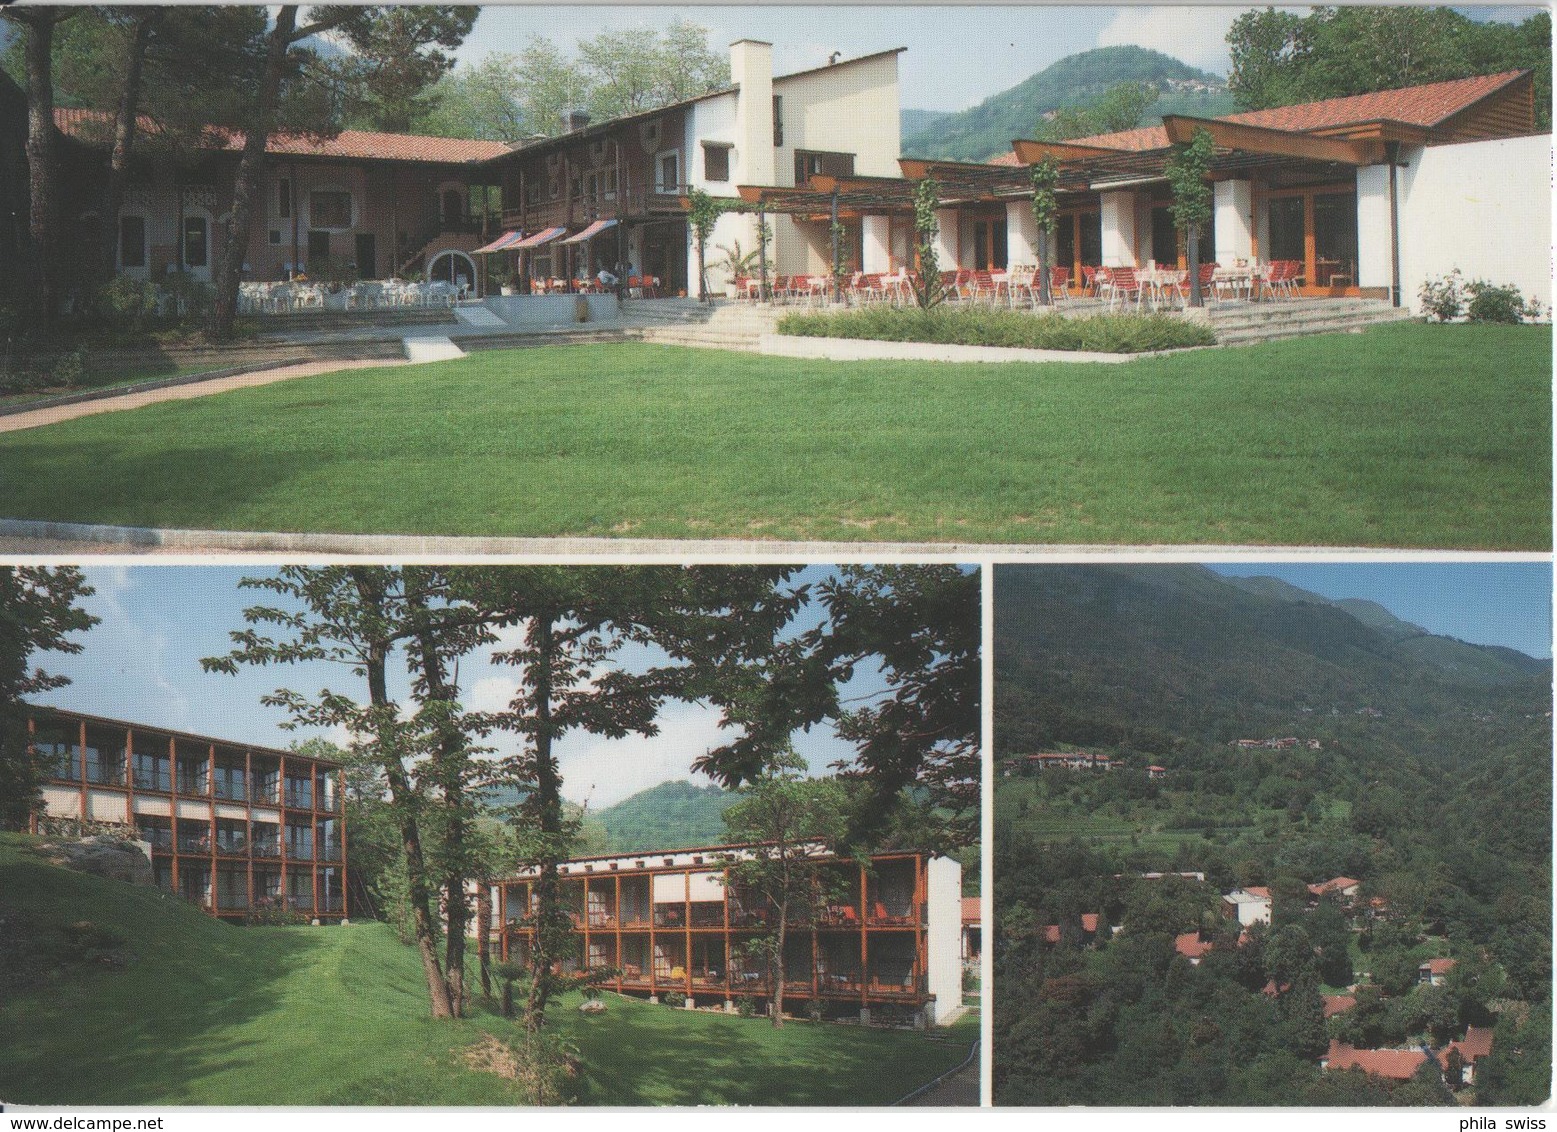 Feriendorf VPOD I Grappoli, 6981 Sessa .- Hotel, Bungalows, Schwimmbad, Camping - Sessa